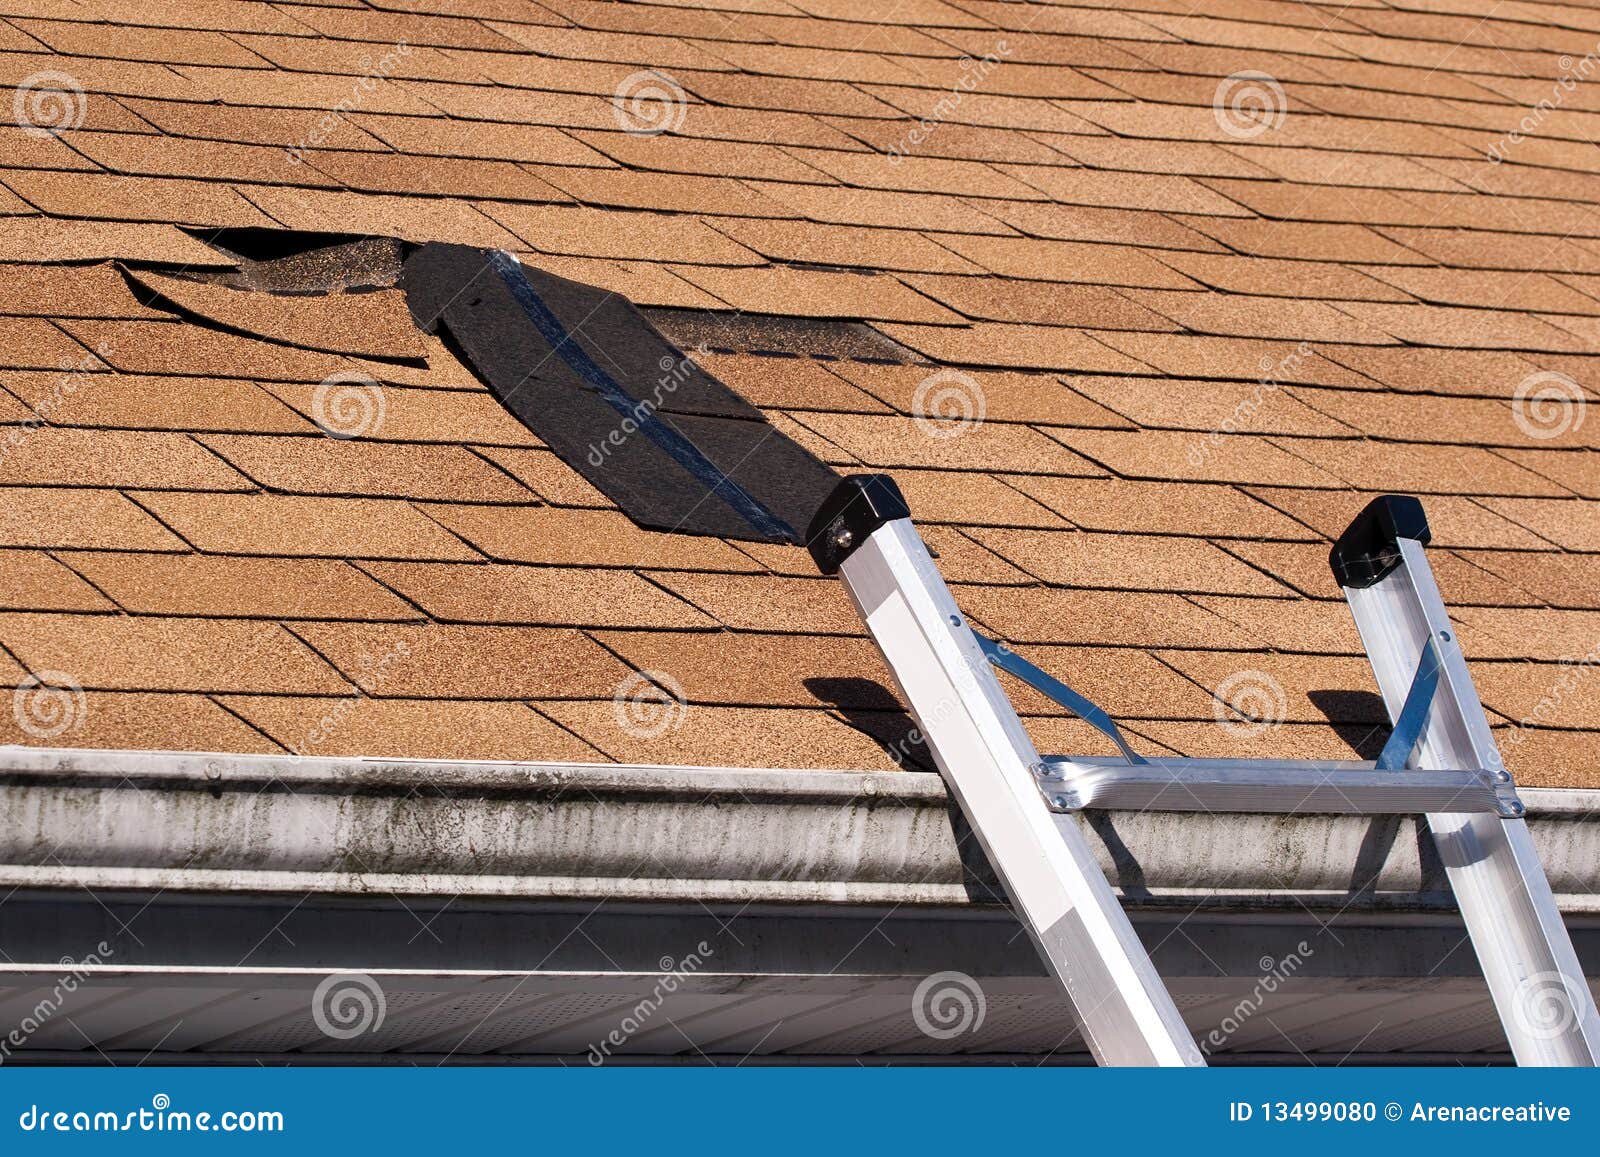 damaged roof shingles repair